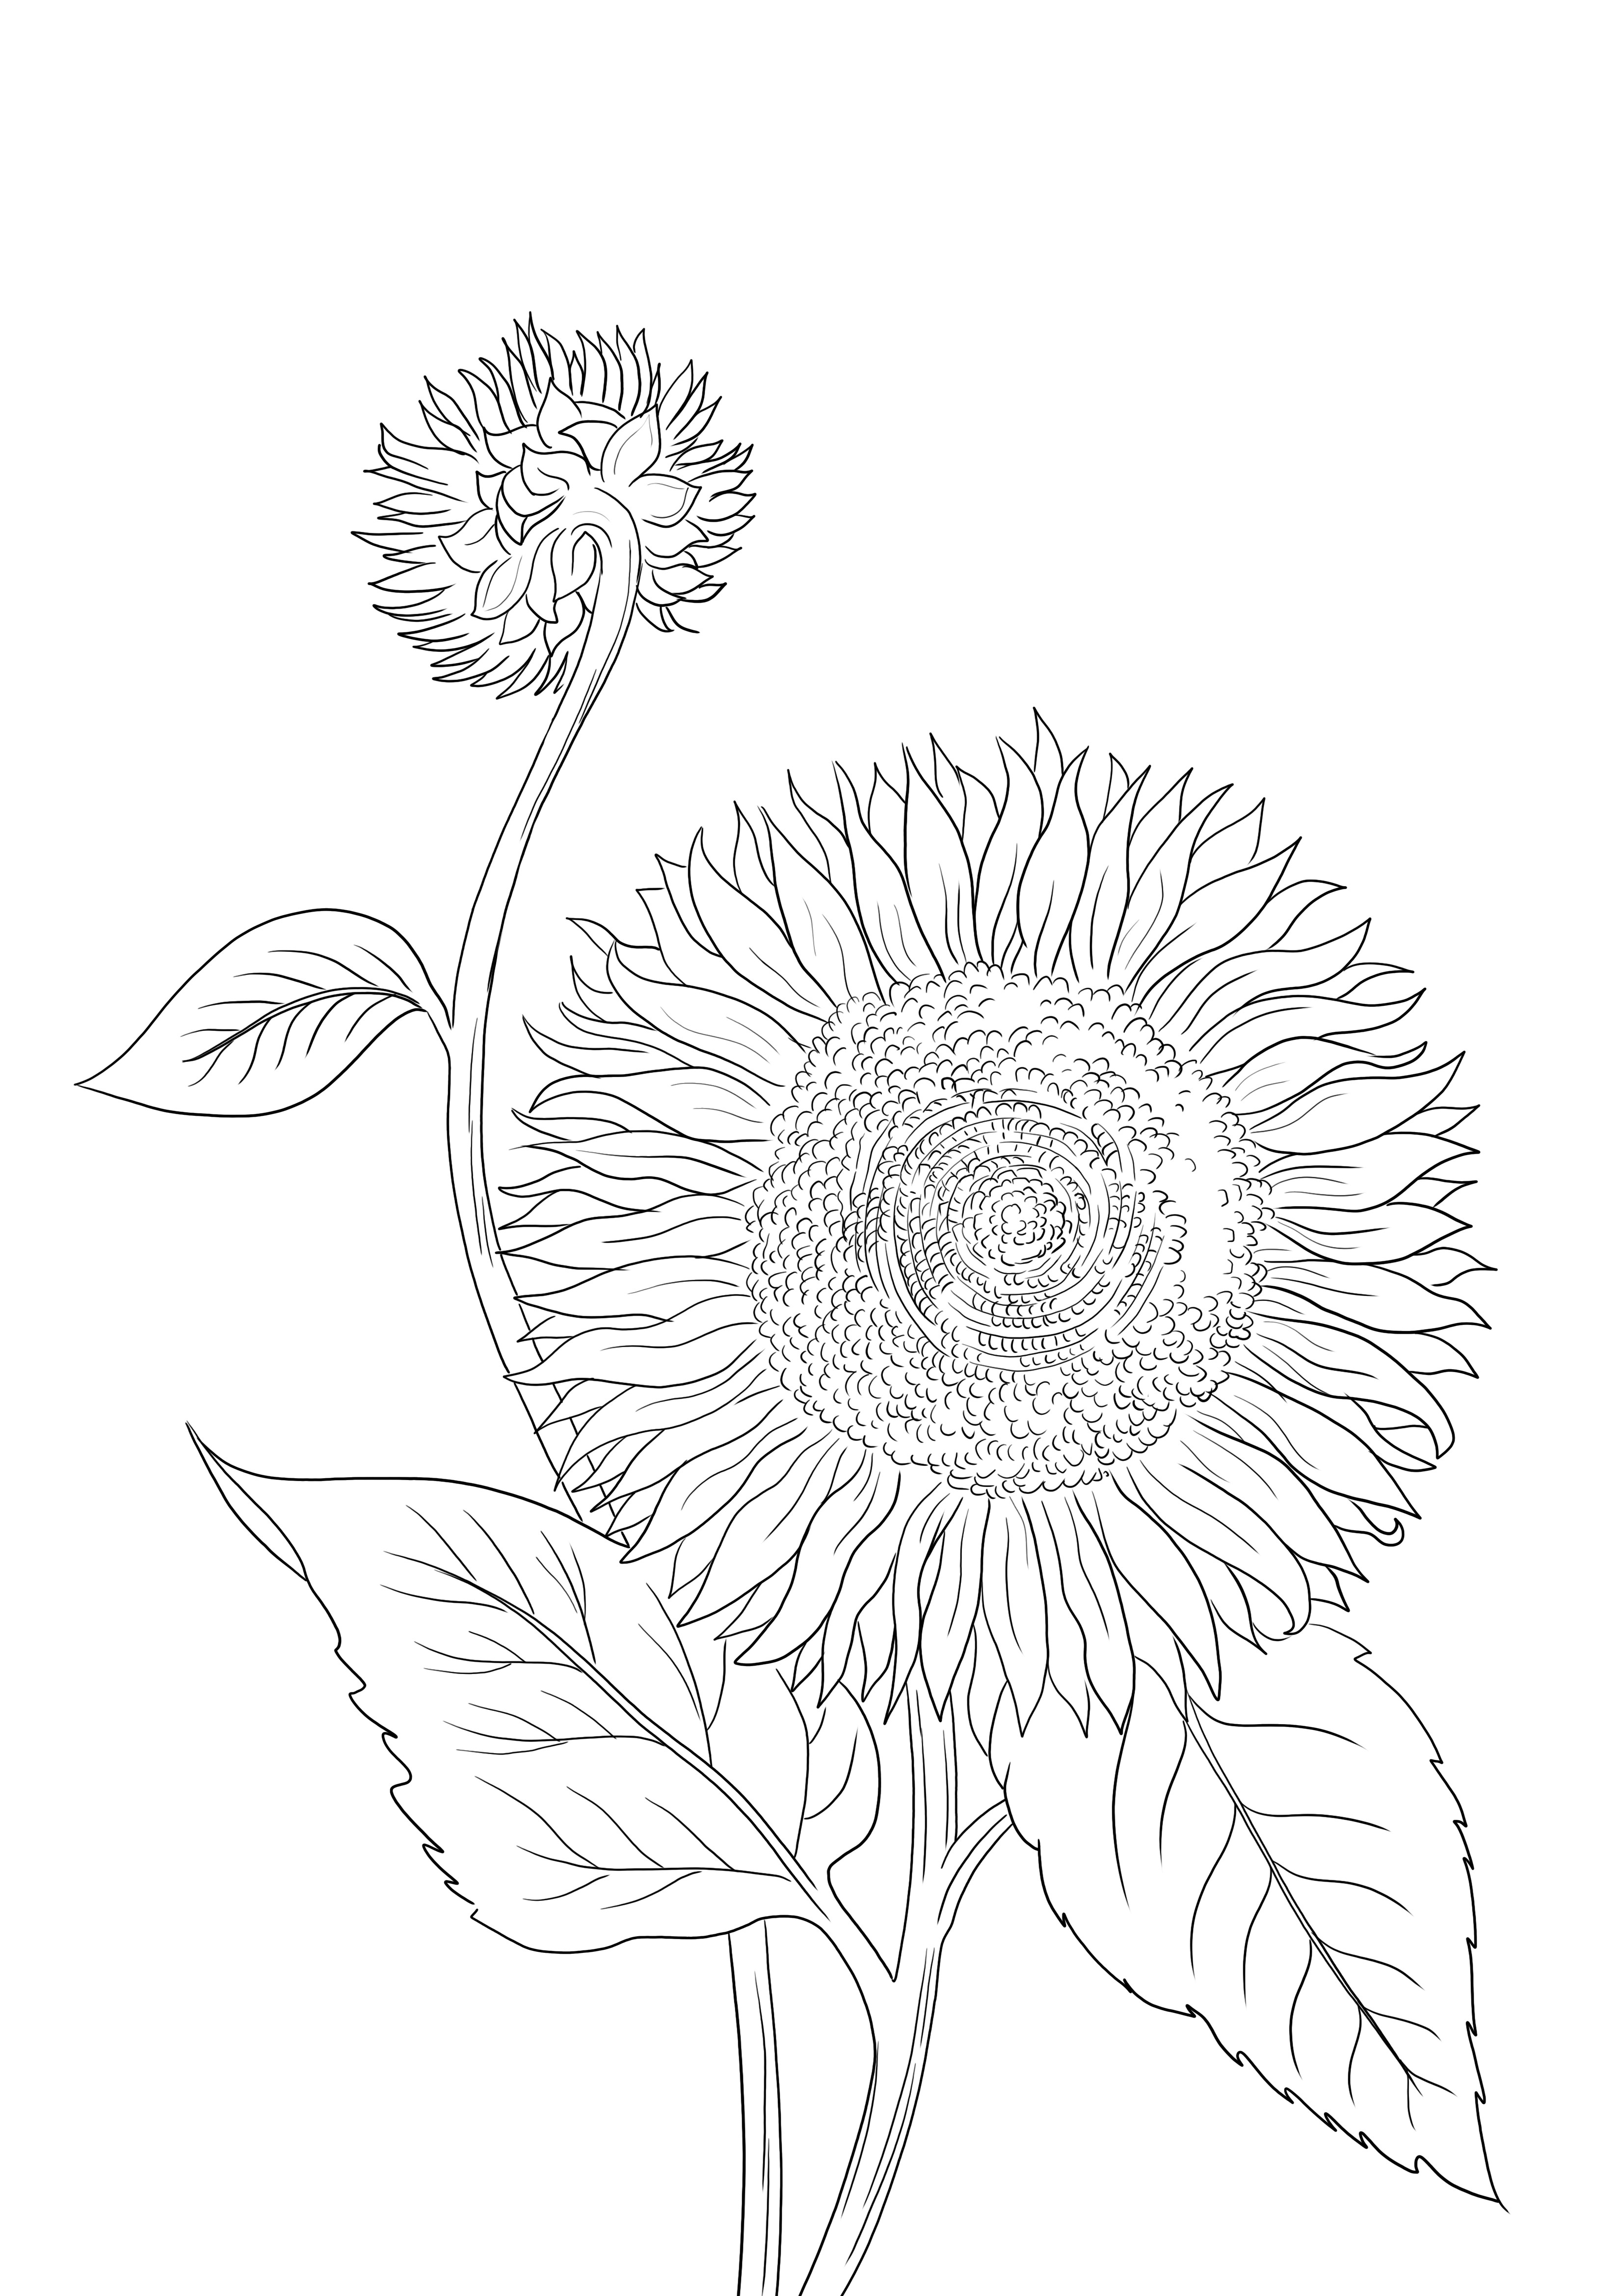 Blooming Sunflower siap dicetak atau diunduh dan diwarnai